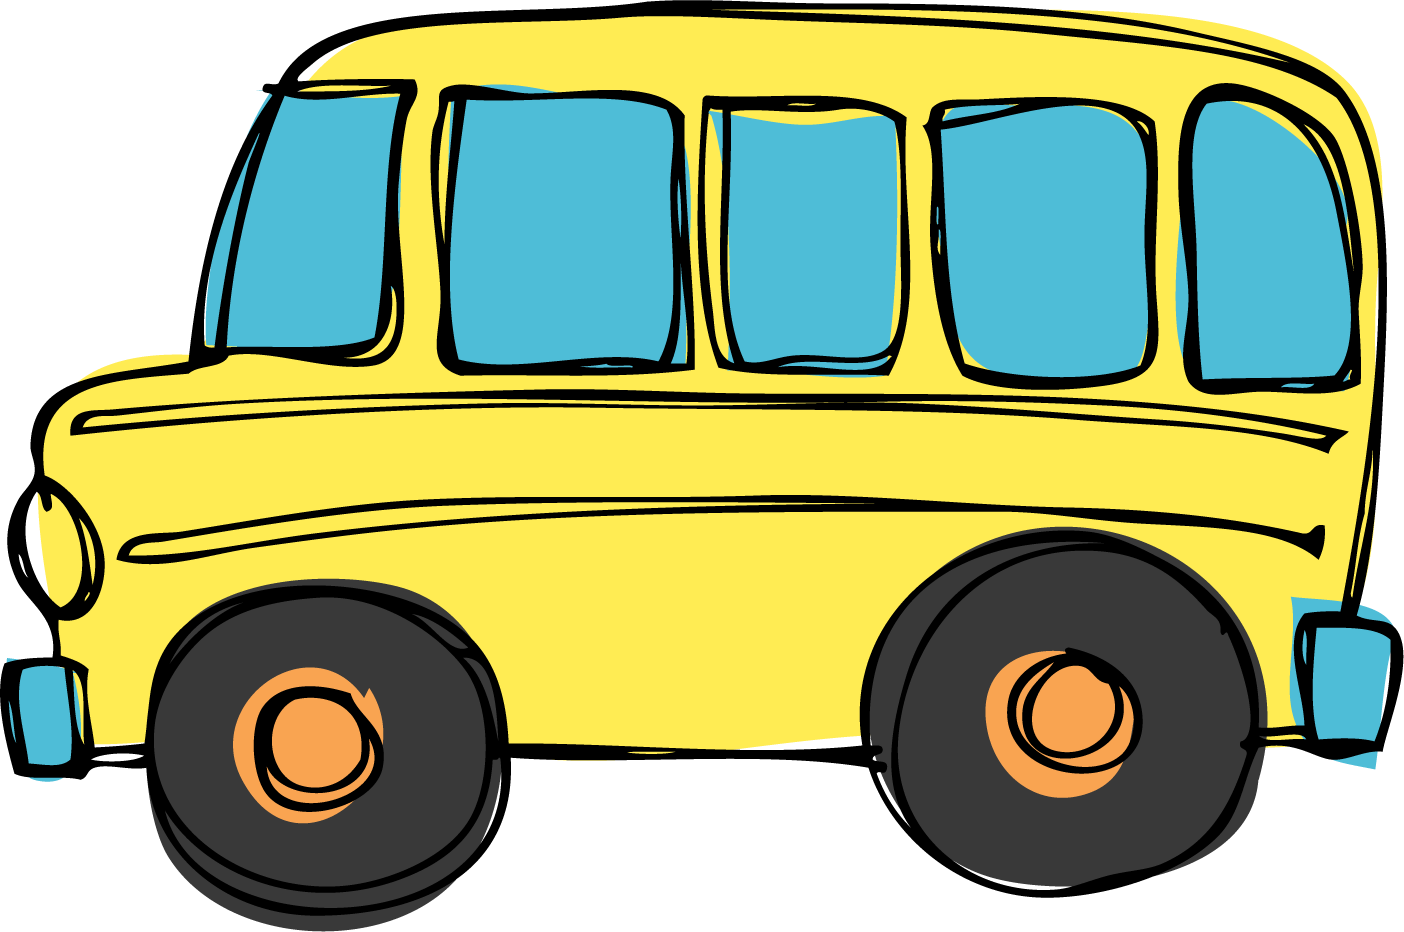 Transportation school bus clipart